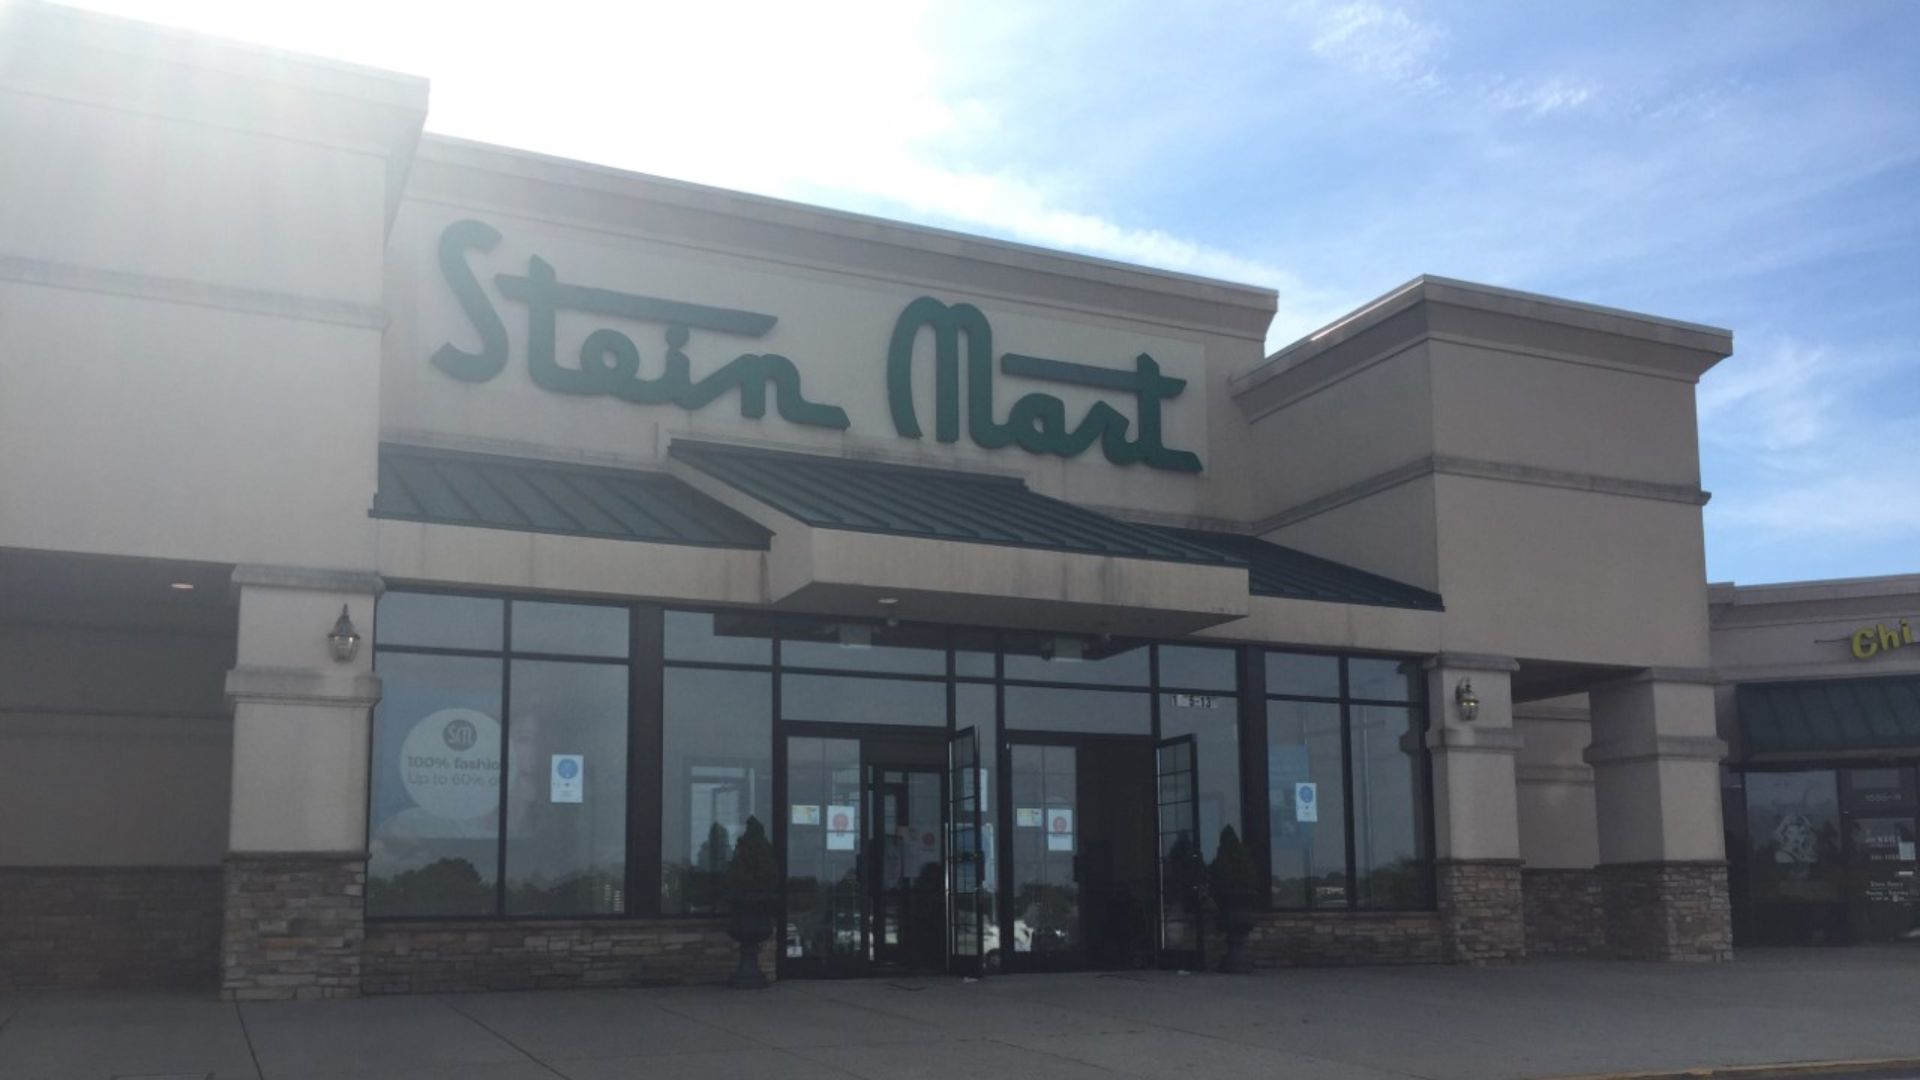 Stein Mart begins liquidation sales at all stores